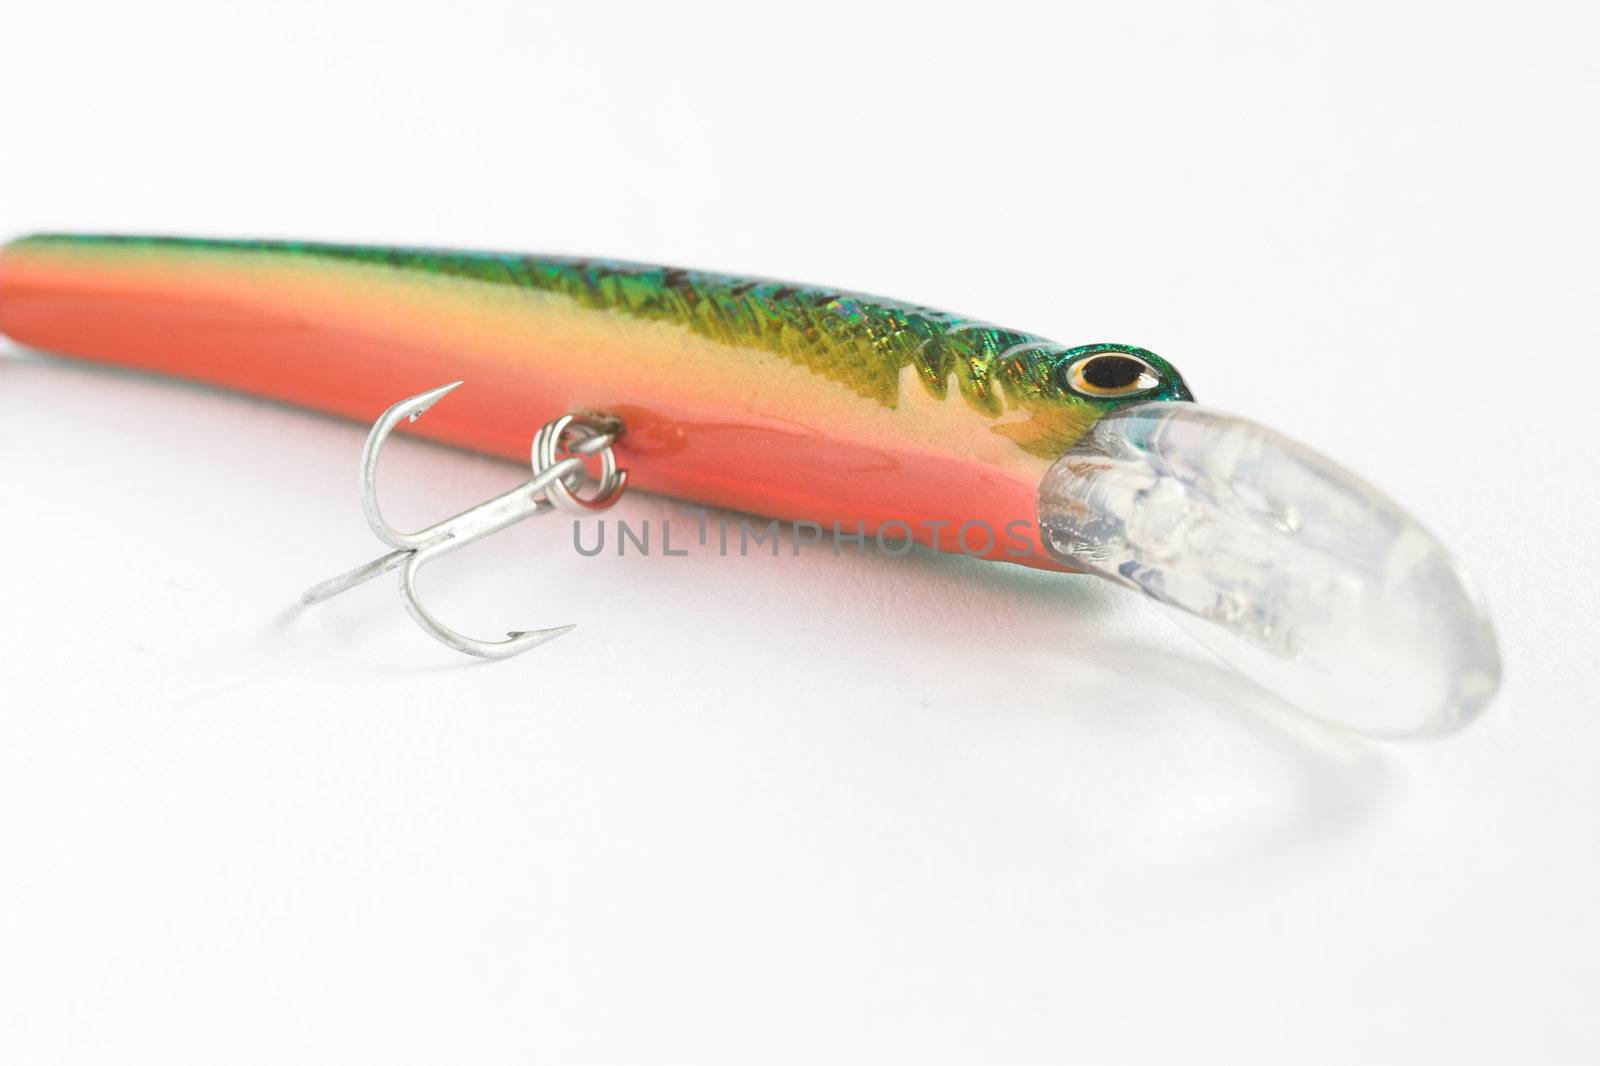 Orange-green fishing lure